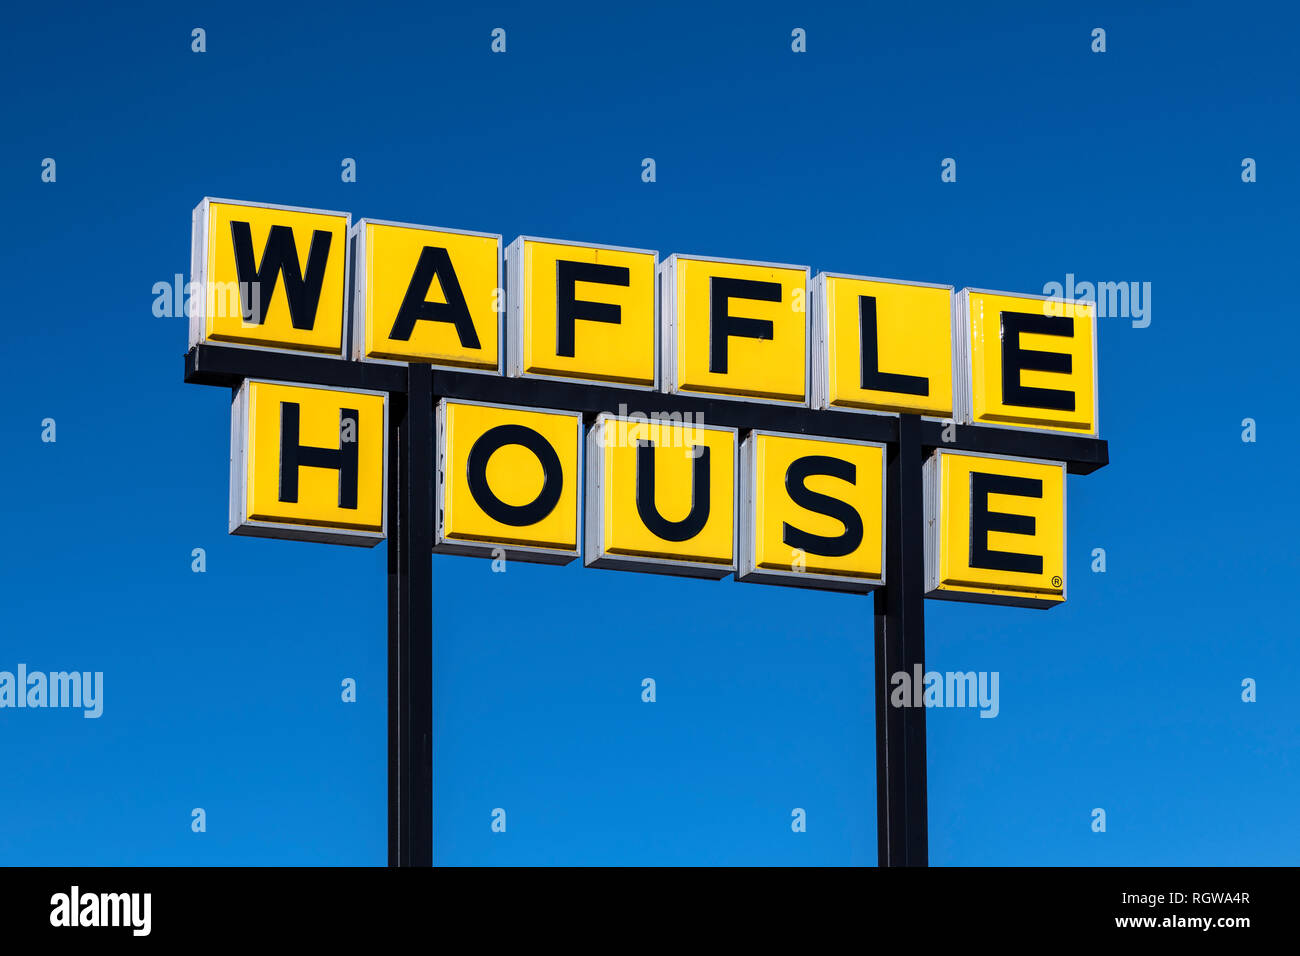 Waffle House est une chaîne de restaurants américaine principalement situés dans les états du sud. Banque D'Images